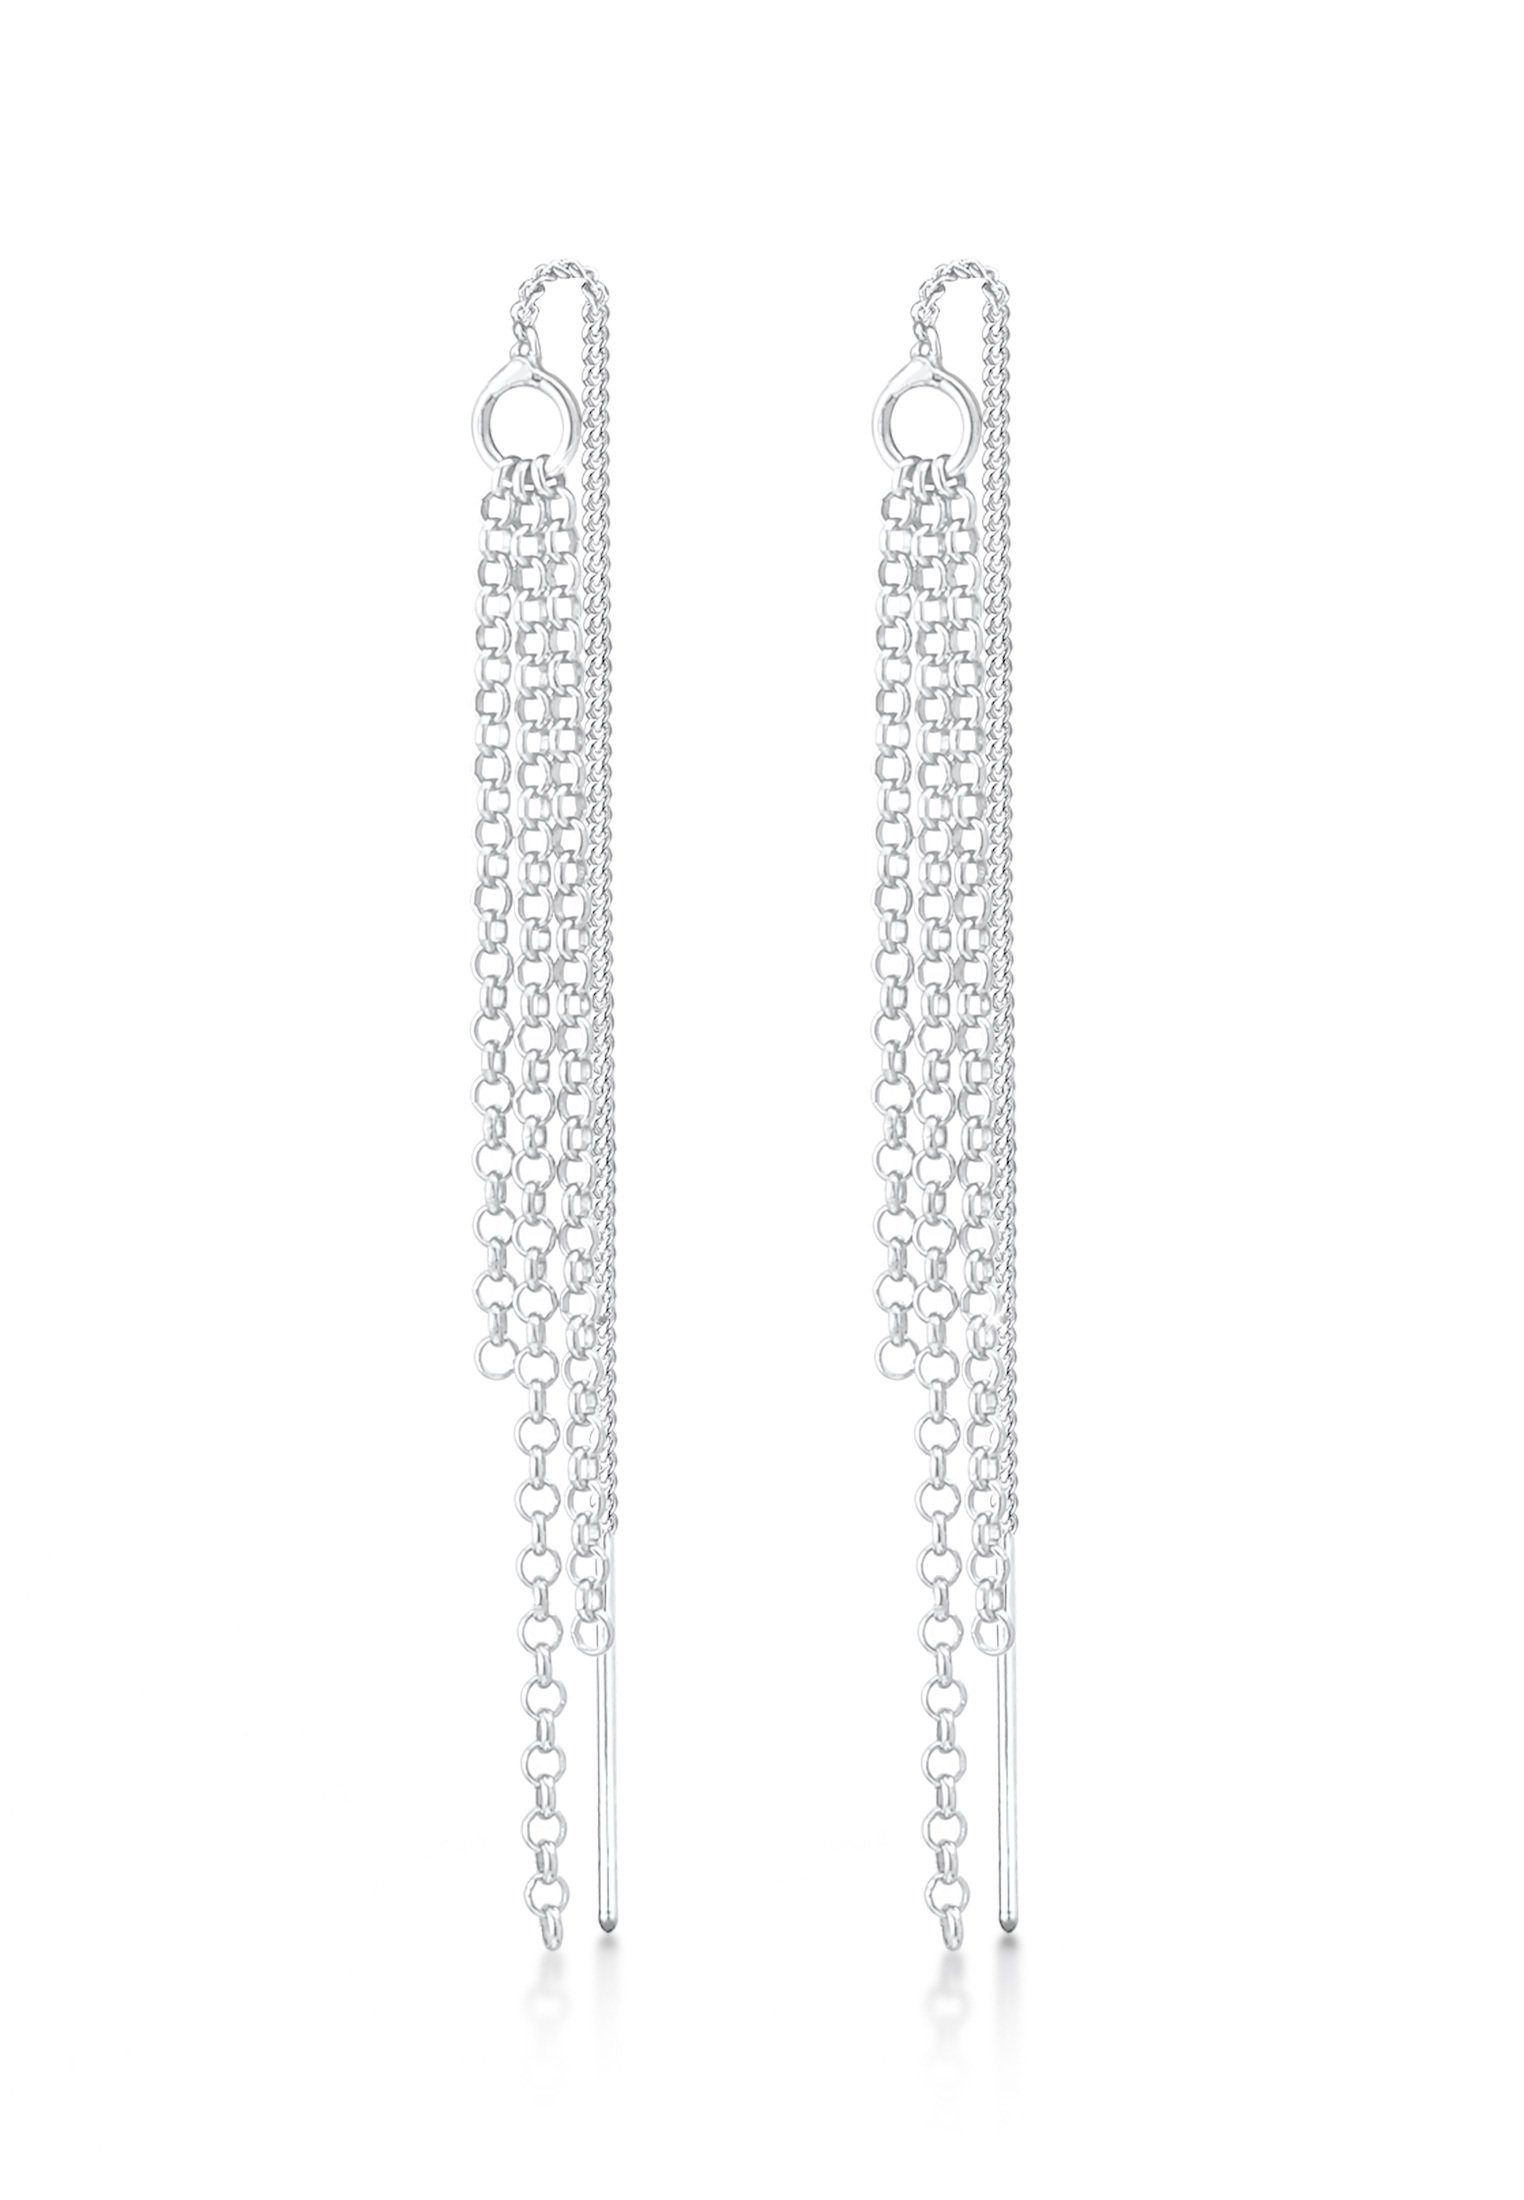 [Super schön] Elli Paar Ohrhänger Durchzieher Ketten 925 Style Silber Elegant